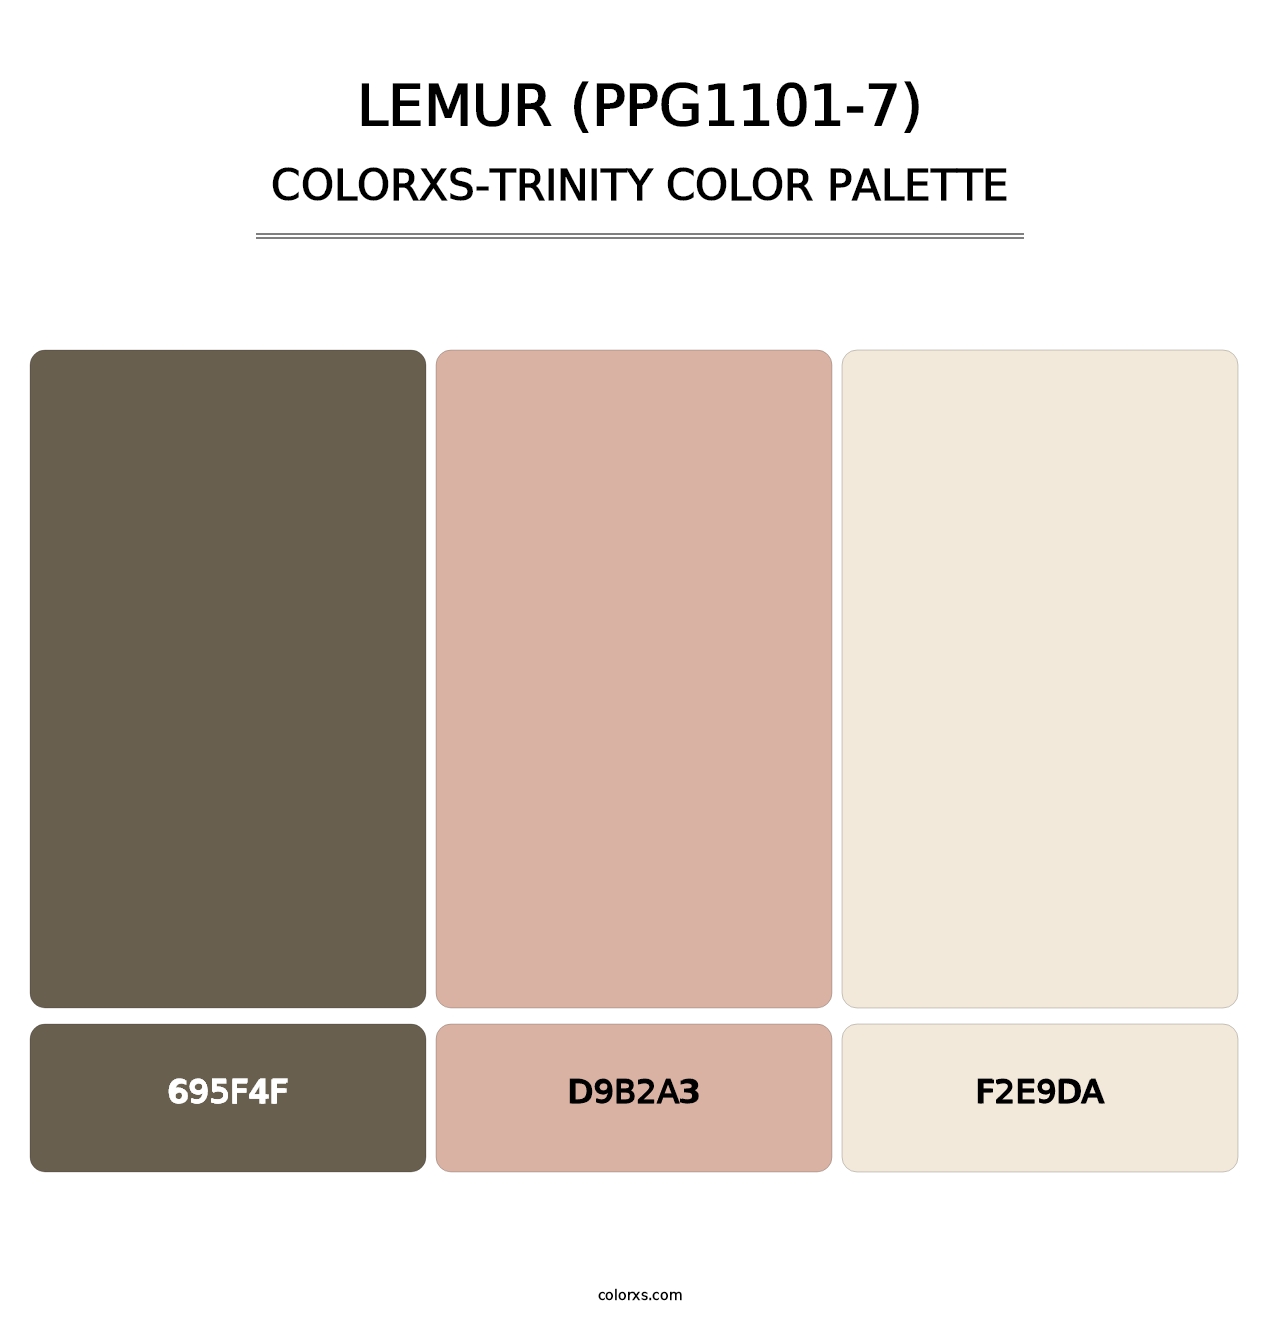 Lemur (PPG1101-7) - Colorxs Trinity Palette